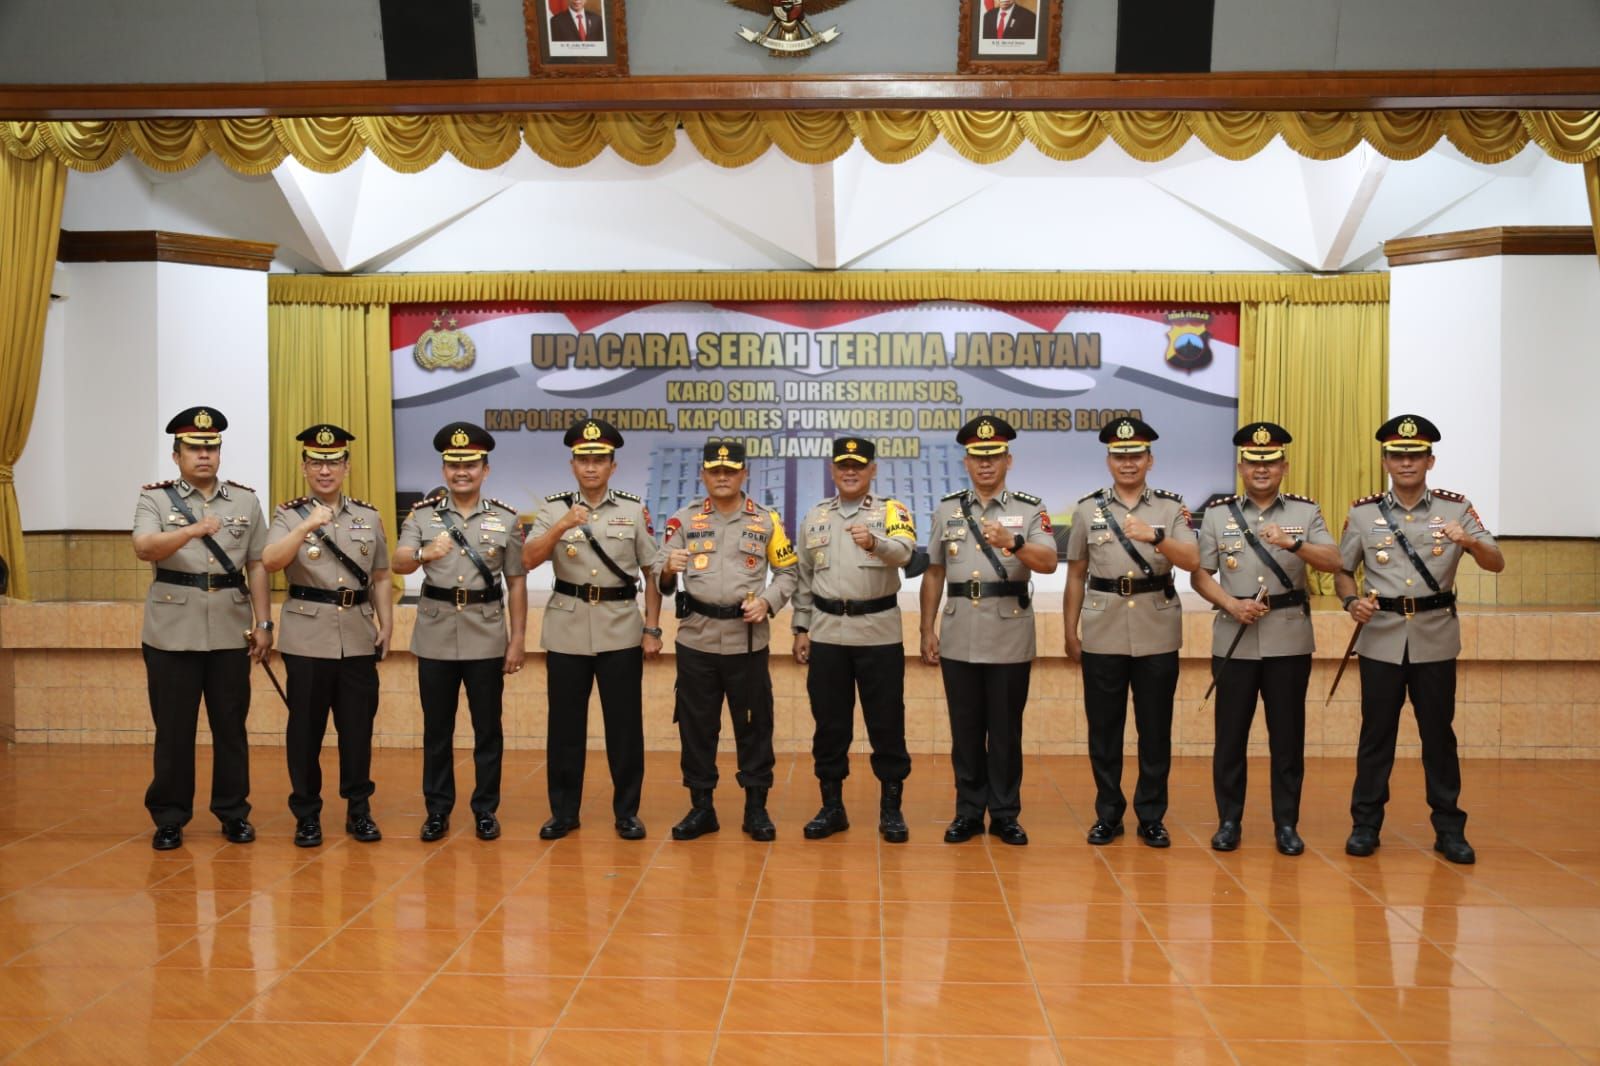 Upacara Serah Terima Jabatan yang dipimpin langsung Kapolda Jateng Irjen Polda Ahmad Luthfi di Gedung Borobudur Mapolda setempat pada Selasa, 20 Juli 2022